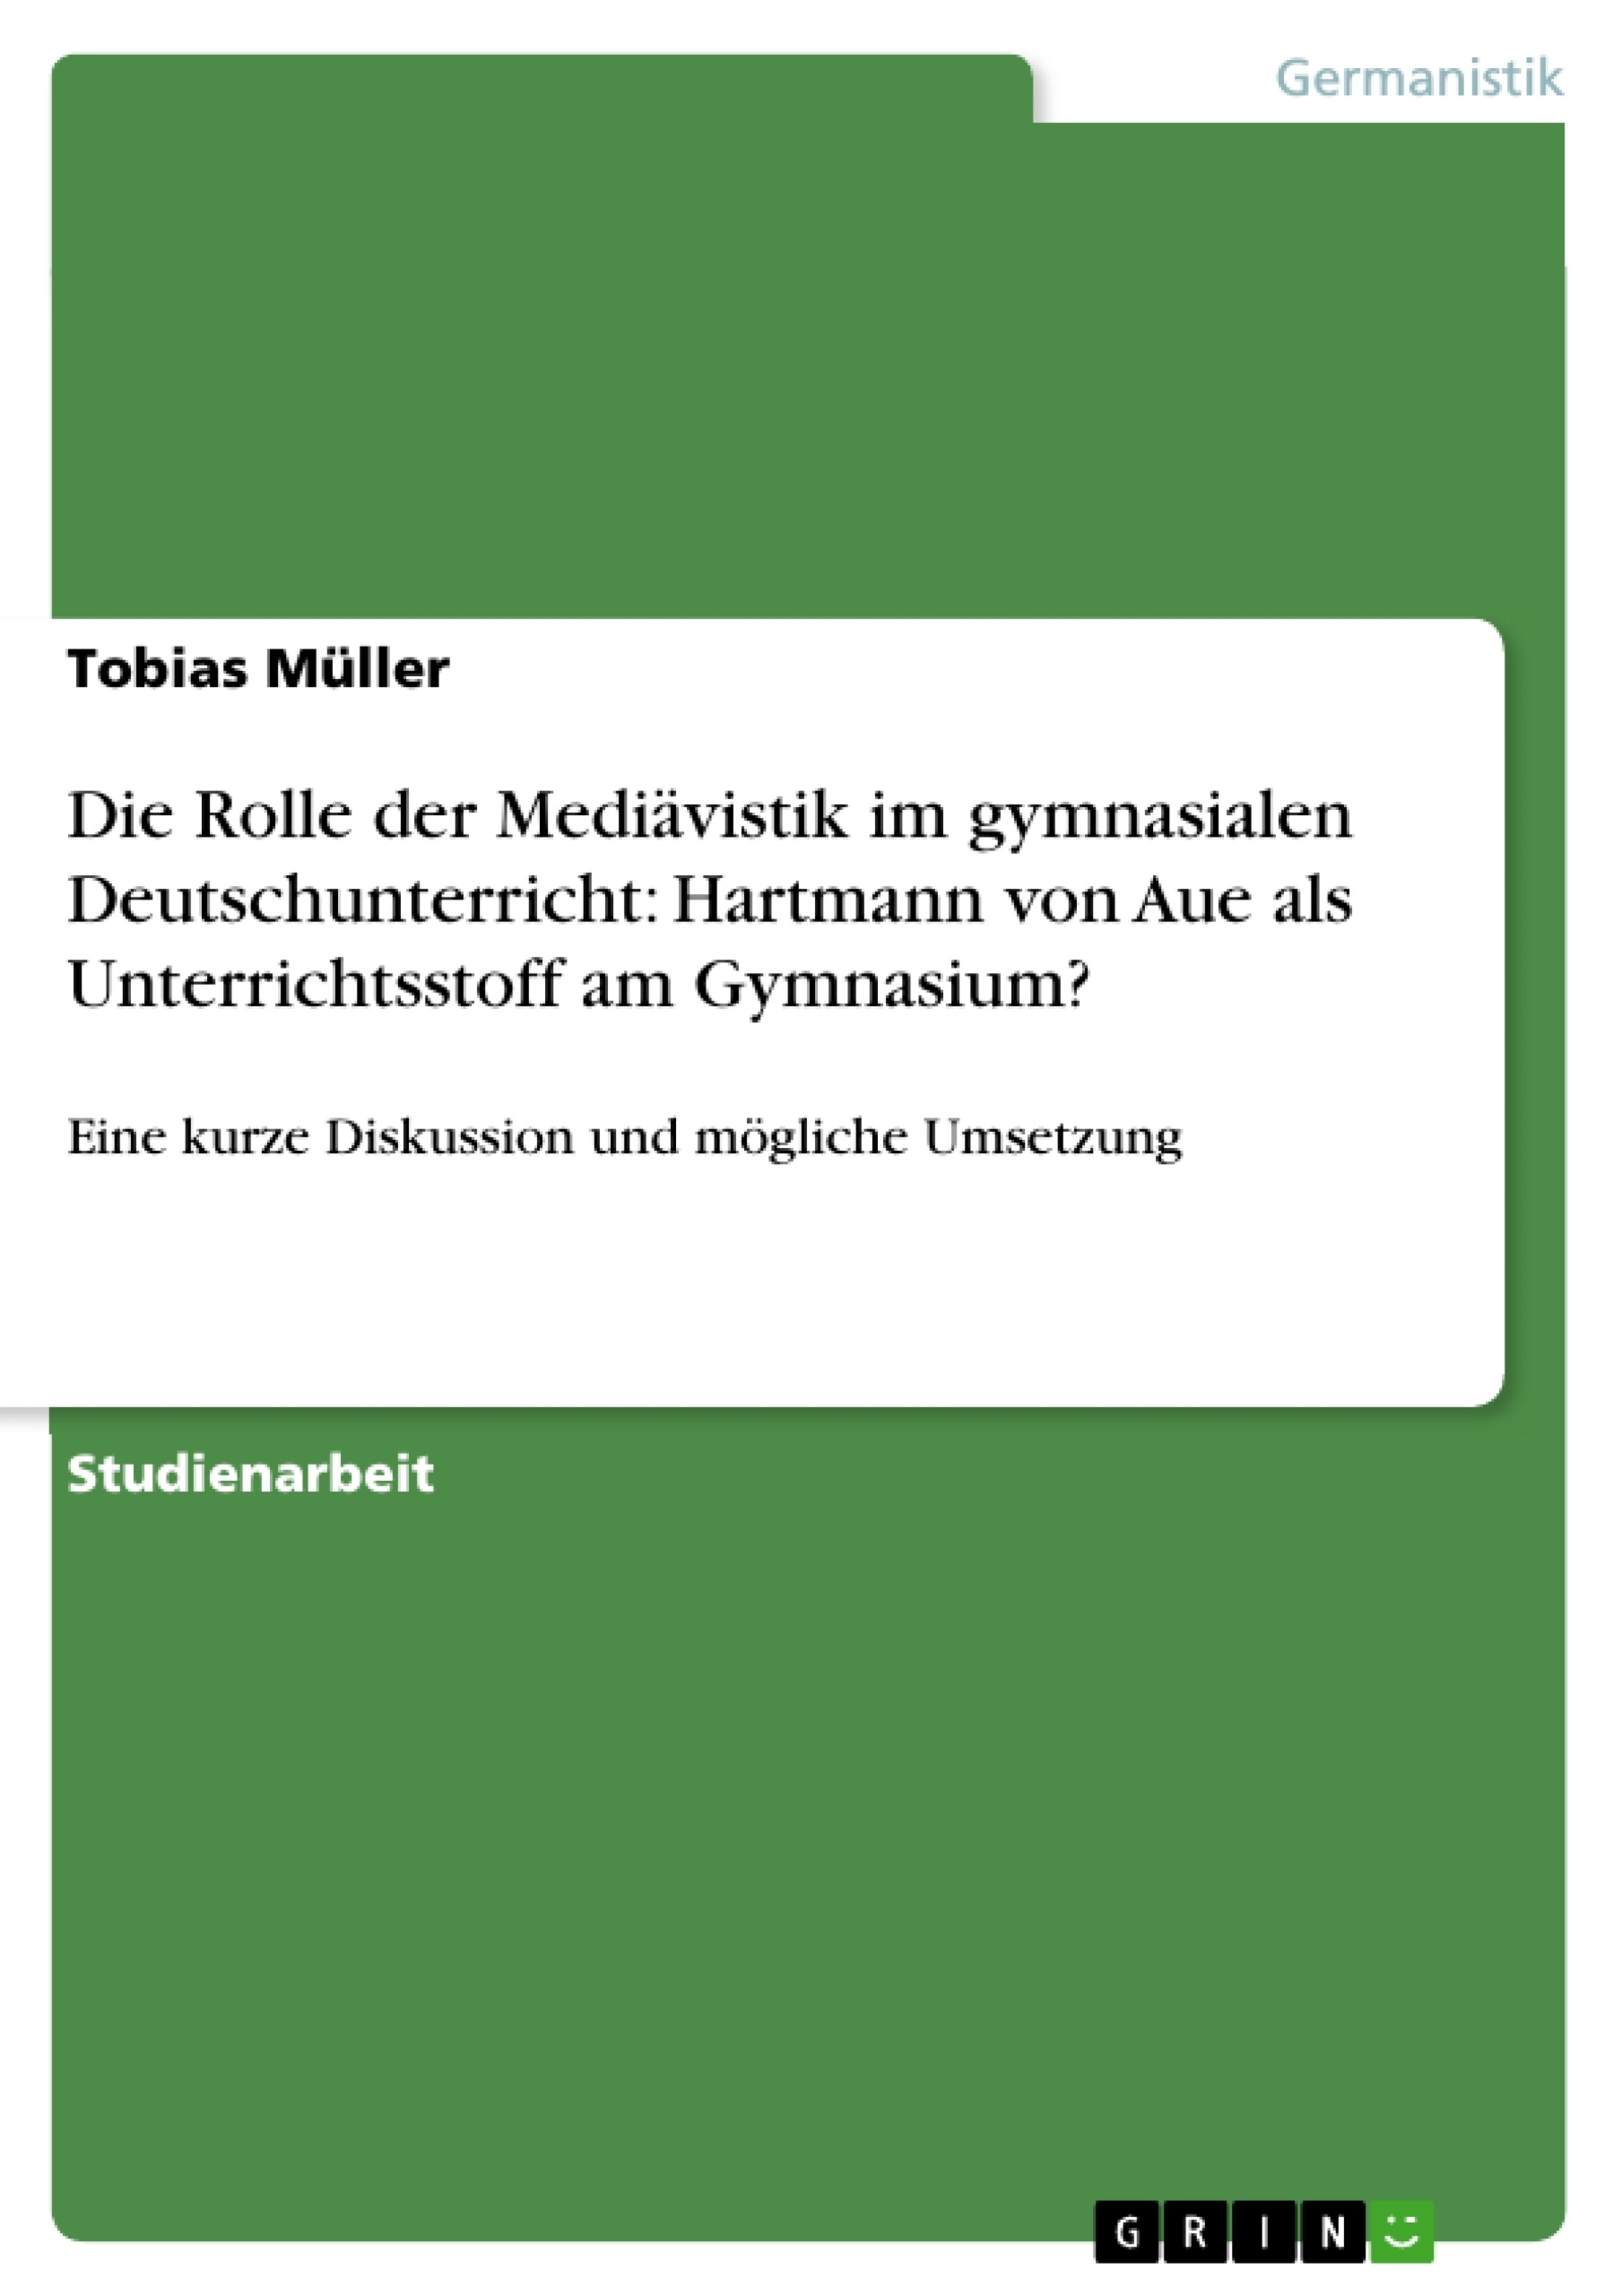 Titre: Die Rolle der Mediävistik im gymnasialen Deutschunterricht: Hartmann von Aue als Unterrichtsstoff am Gymnasium?